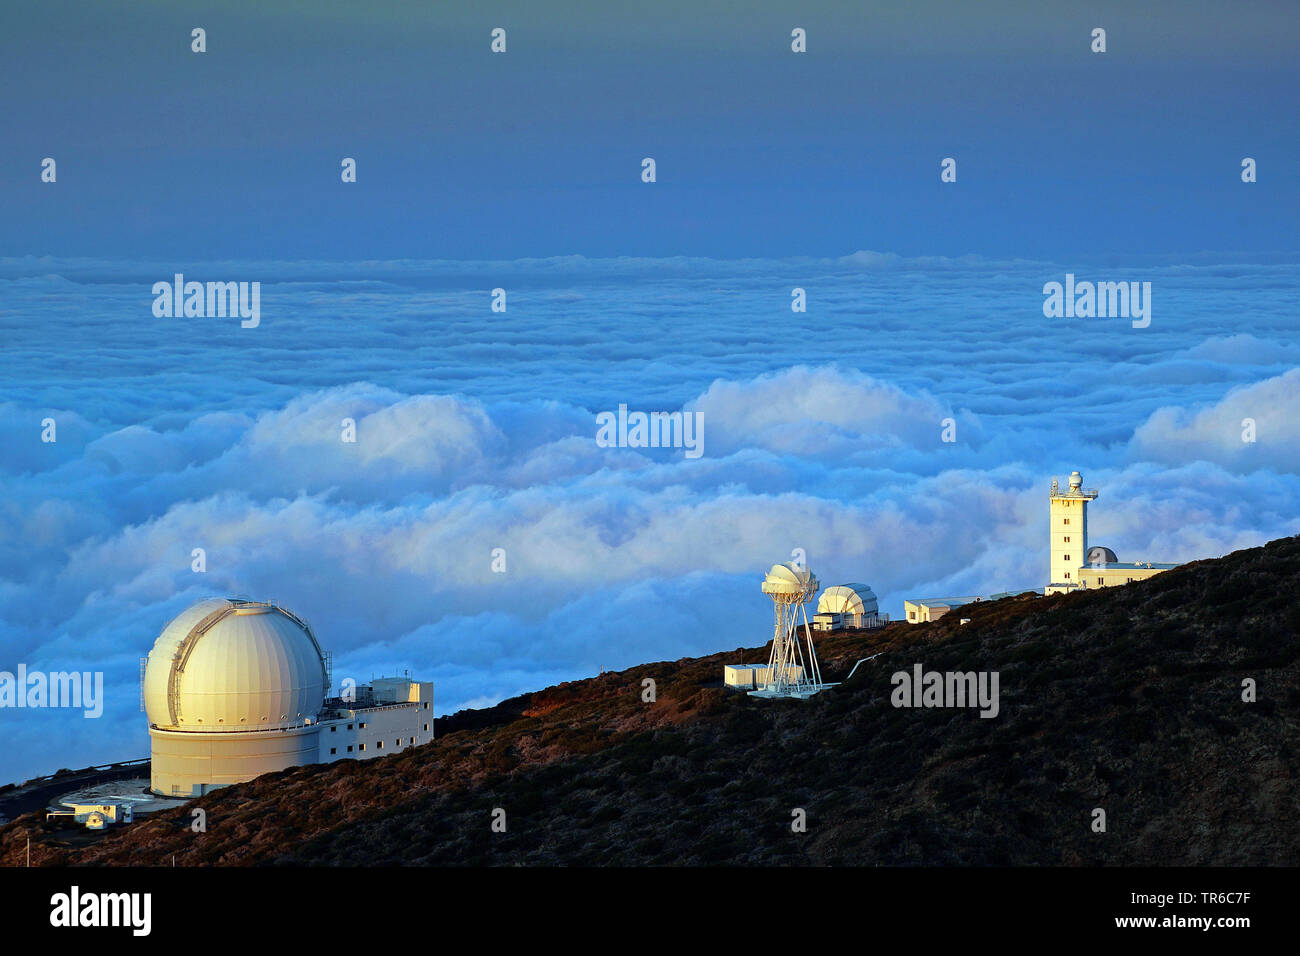 Observatorio del Roque de los Muchachos above the clouds, Canary Islands, La Palma Stock Photo